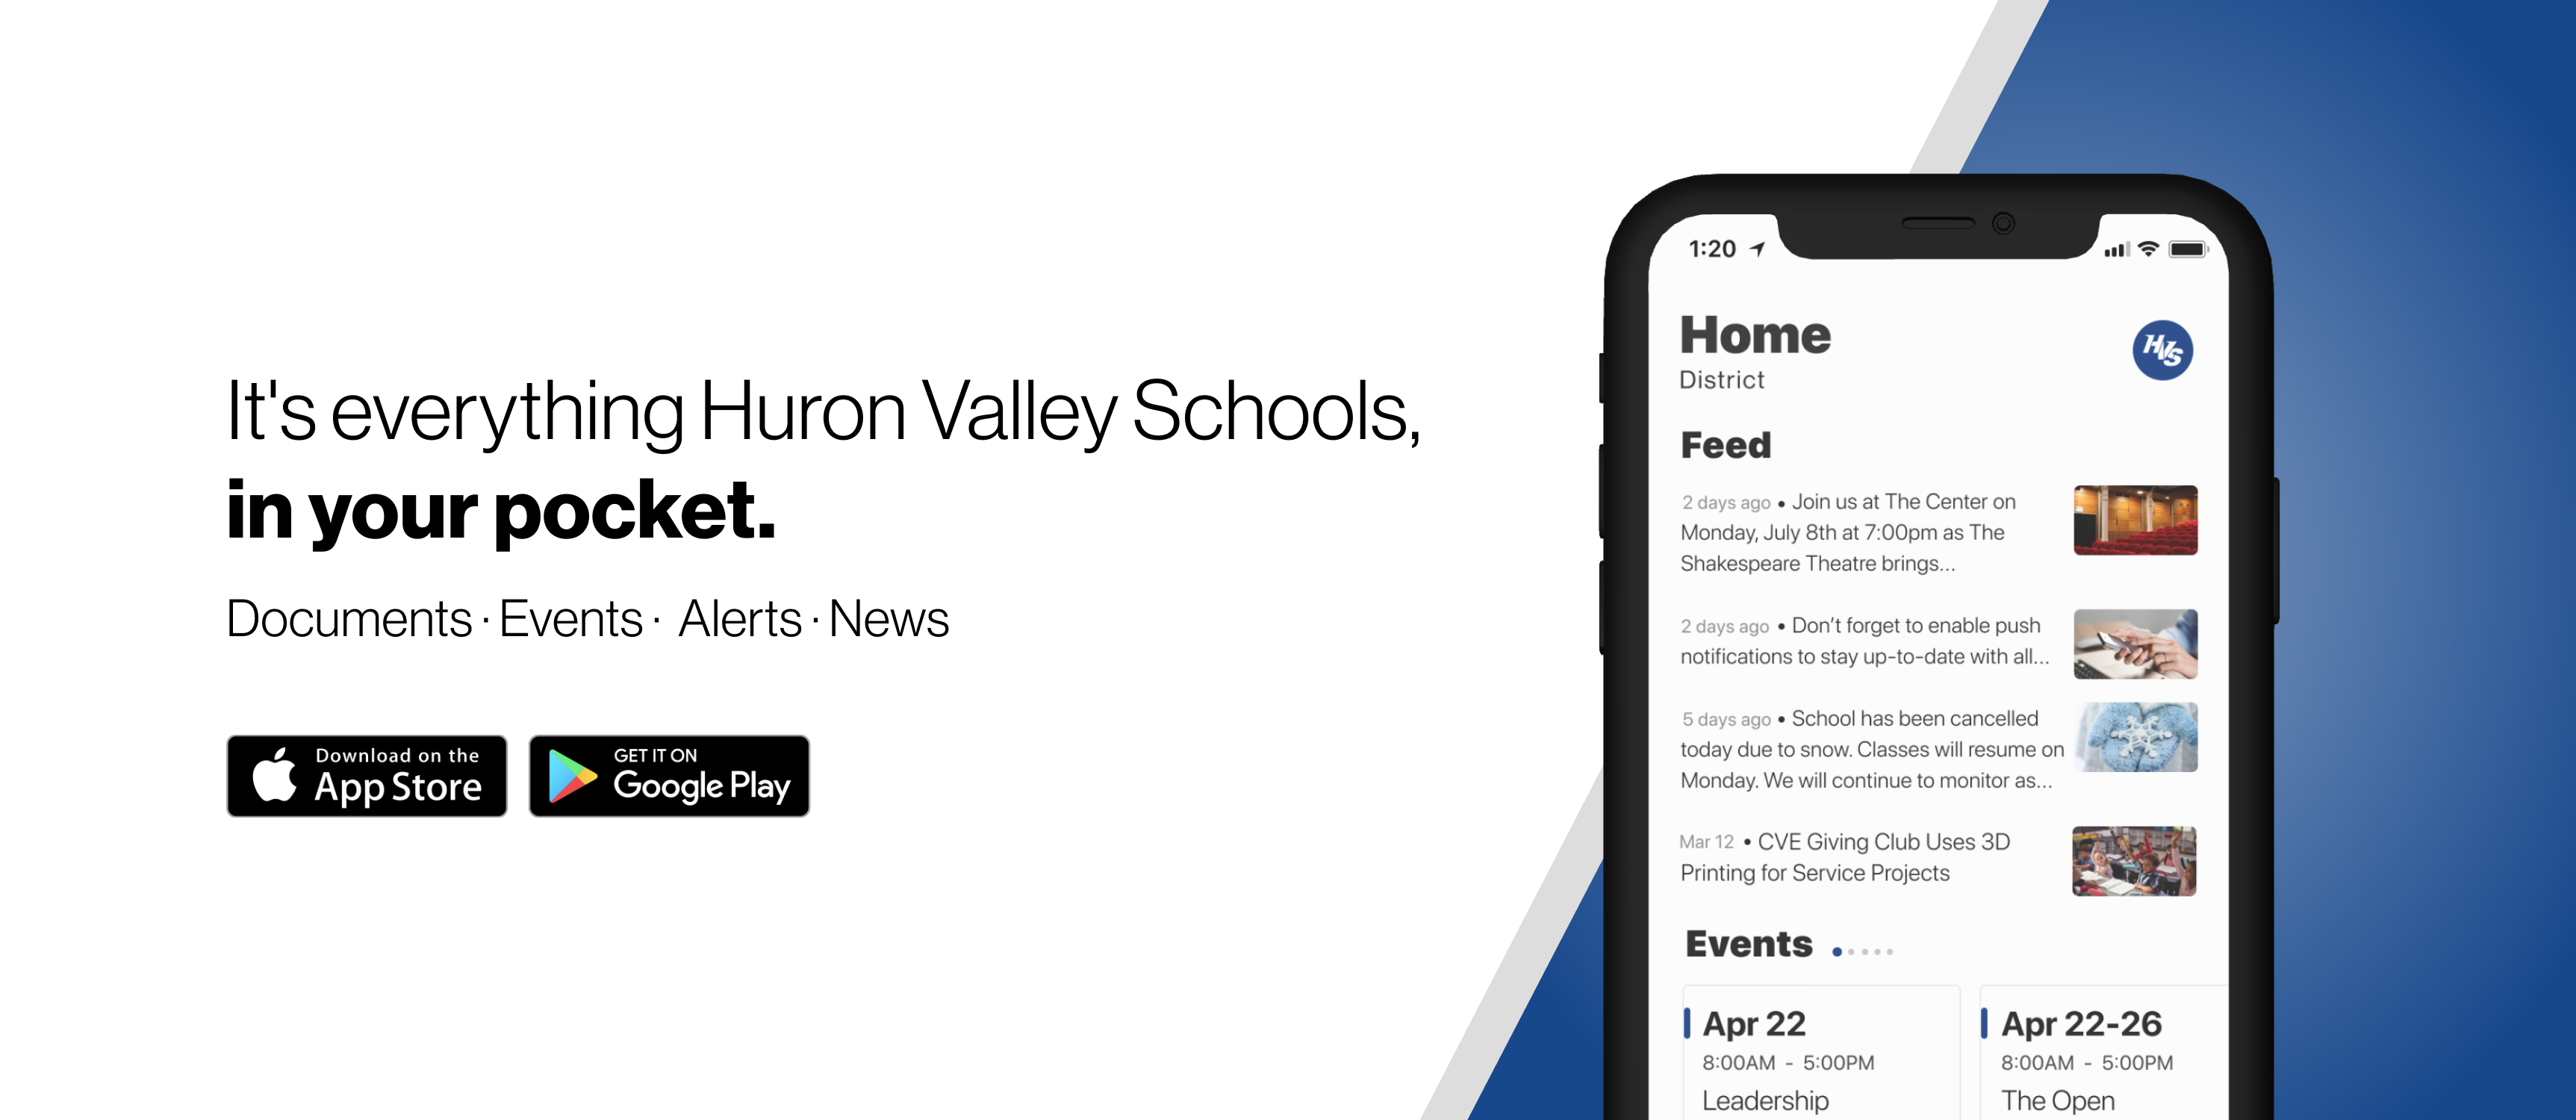 huron valley schools